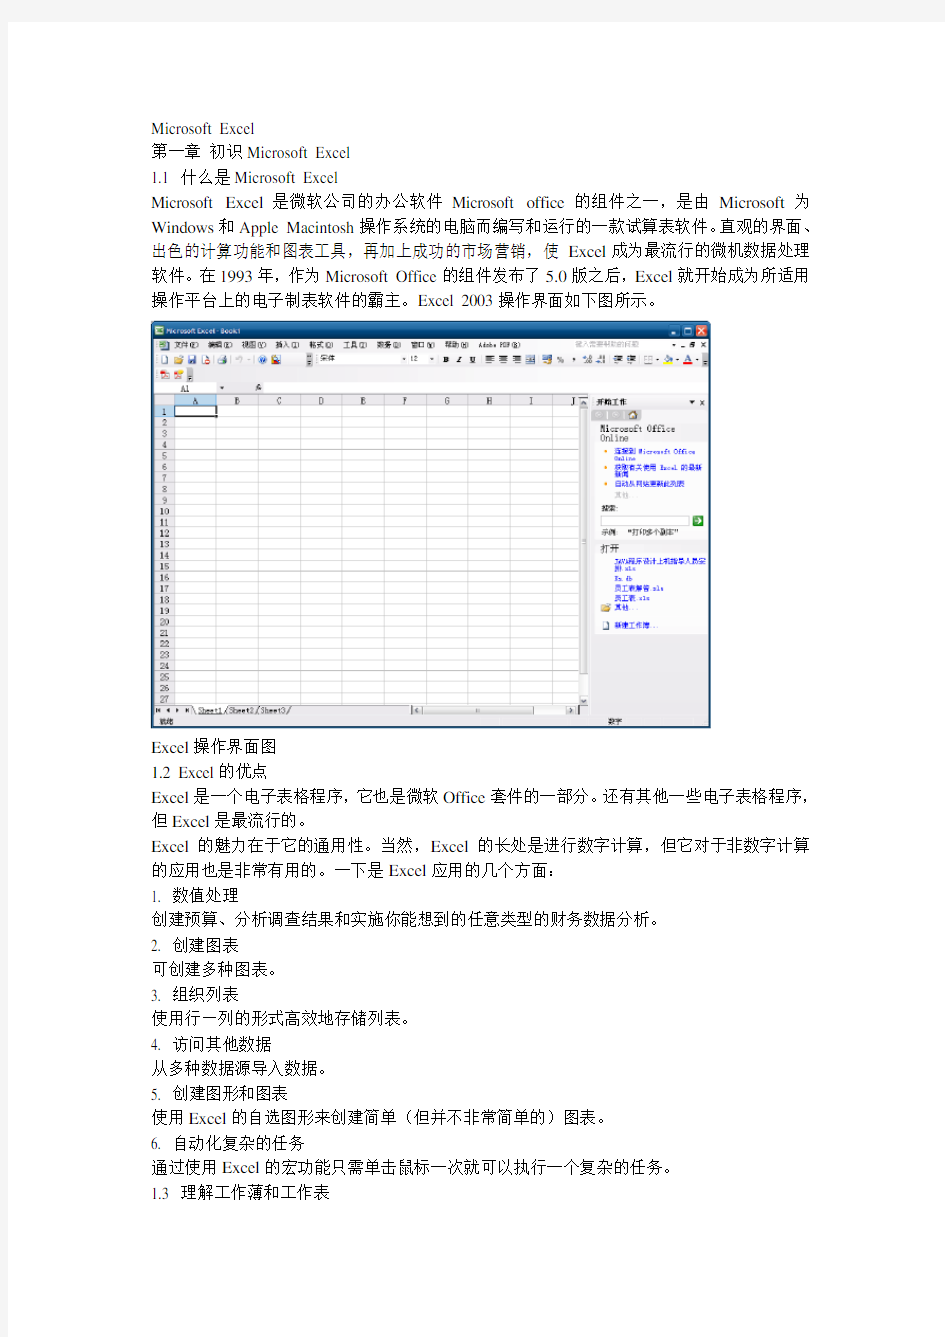 办公软件高级应用技术之Word试题素材(Microsoft Excel)